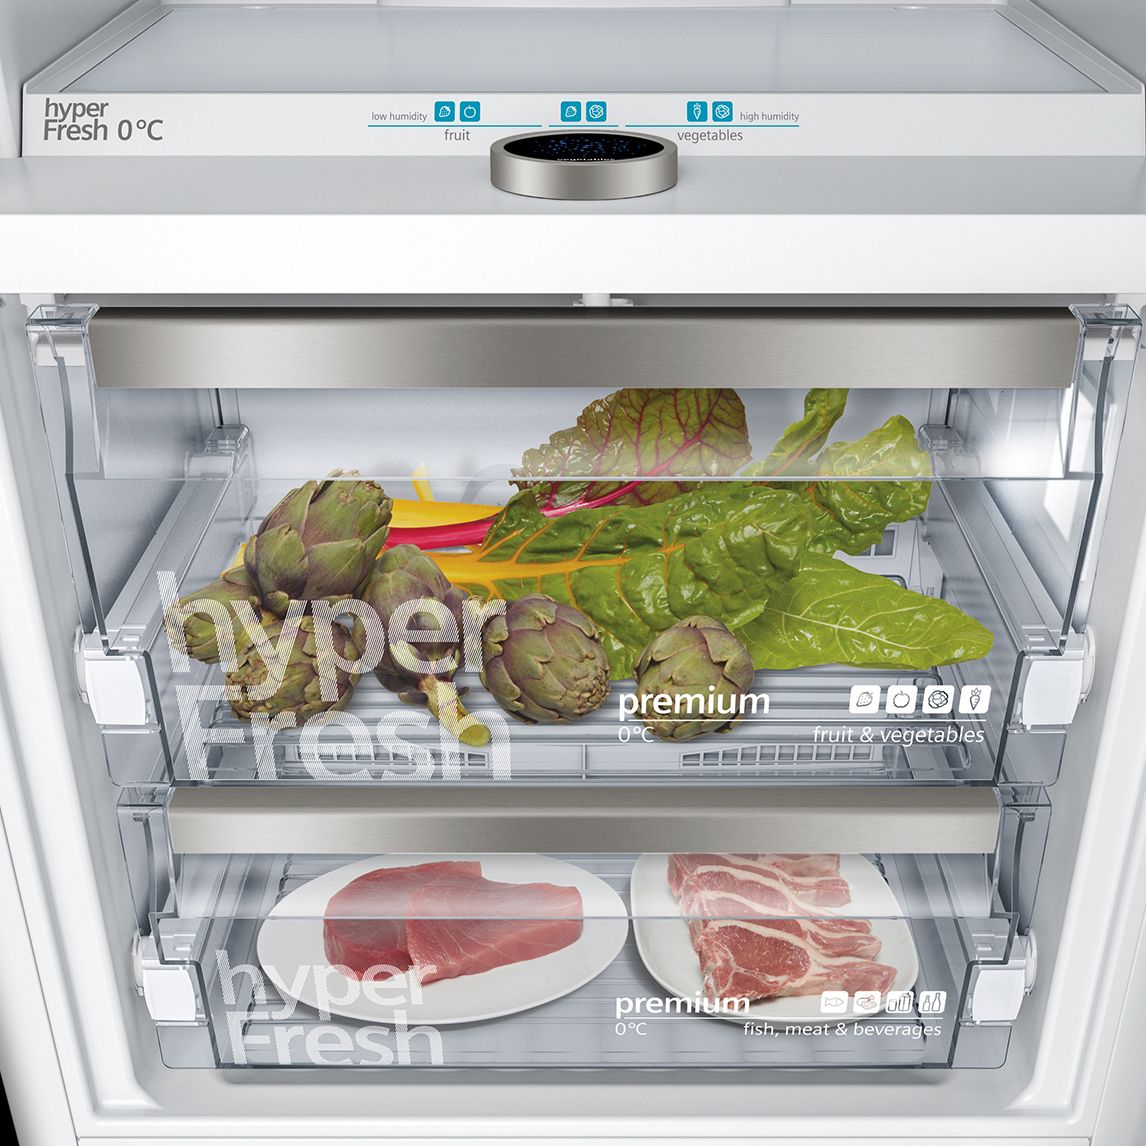 Los repuestos que necesites para tu frigorífico o congelador